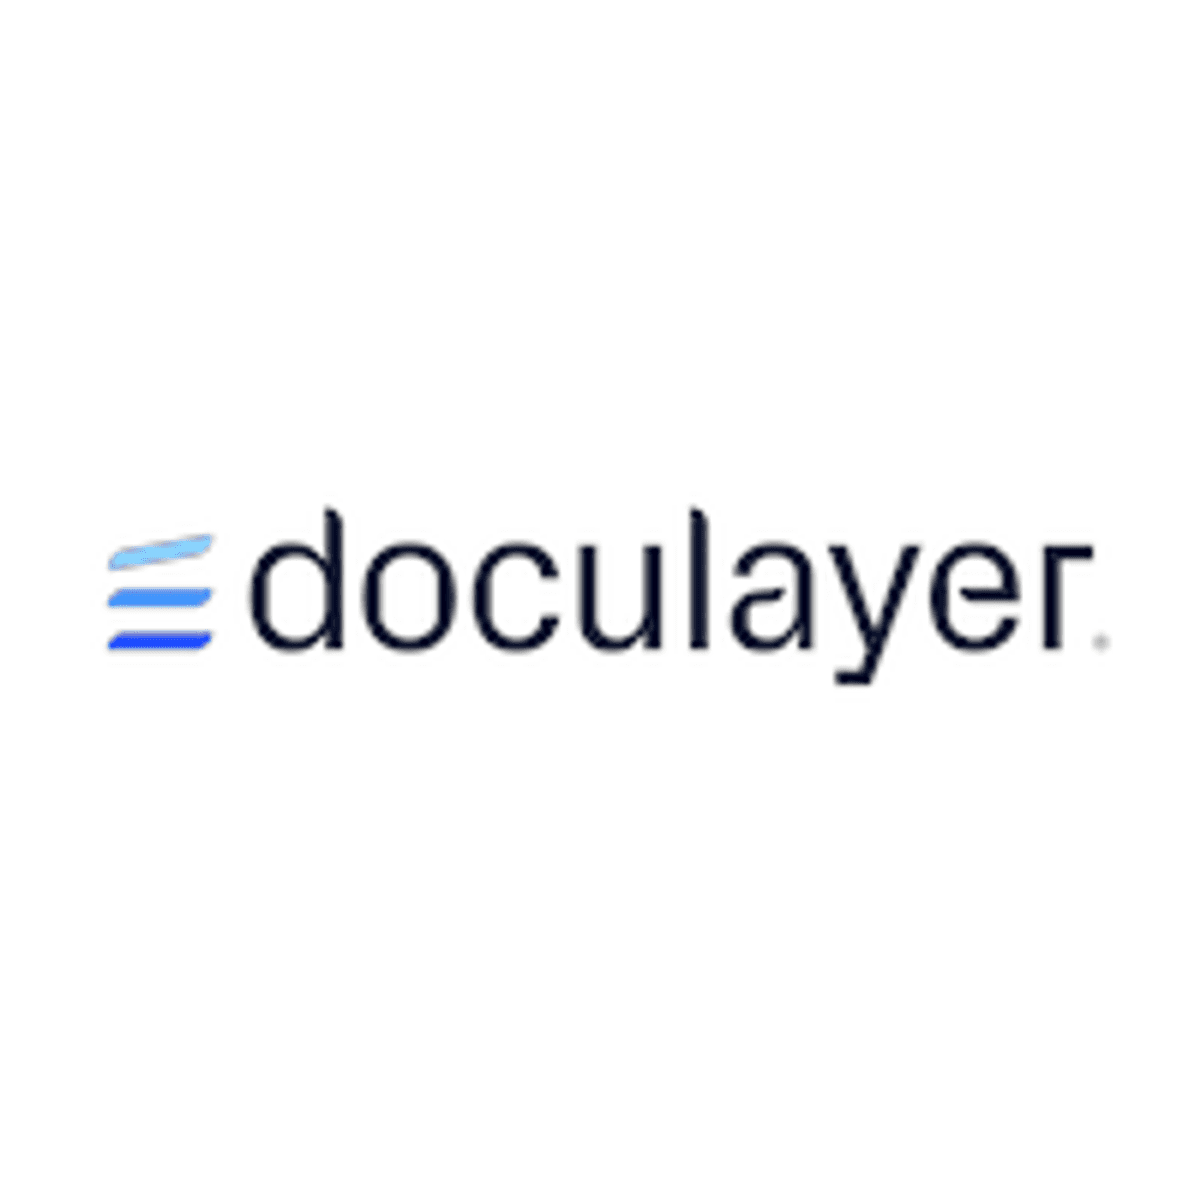 Doculayer 2.0 versnelt geautomatiseerde verwerking van documenten image